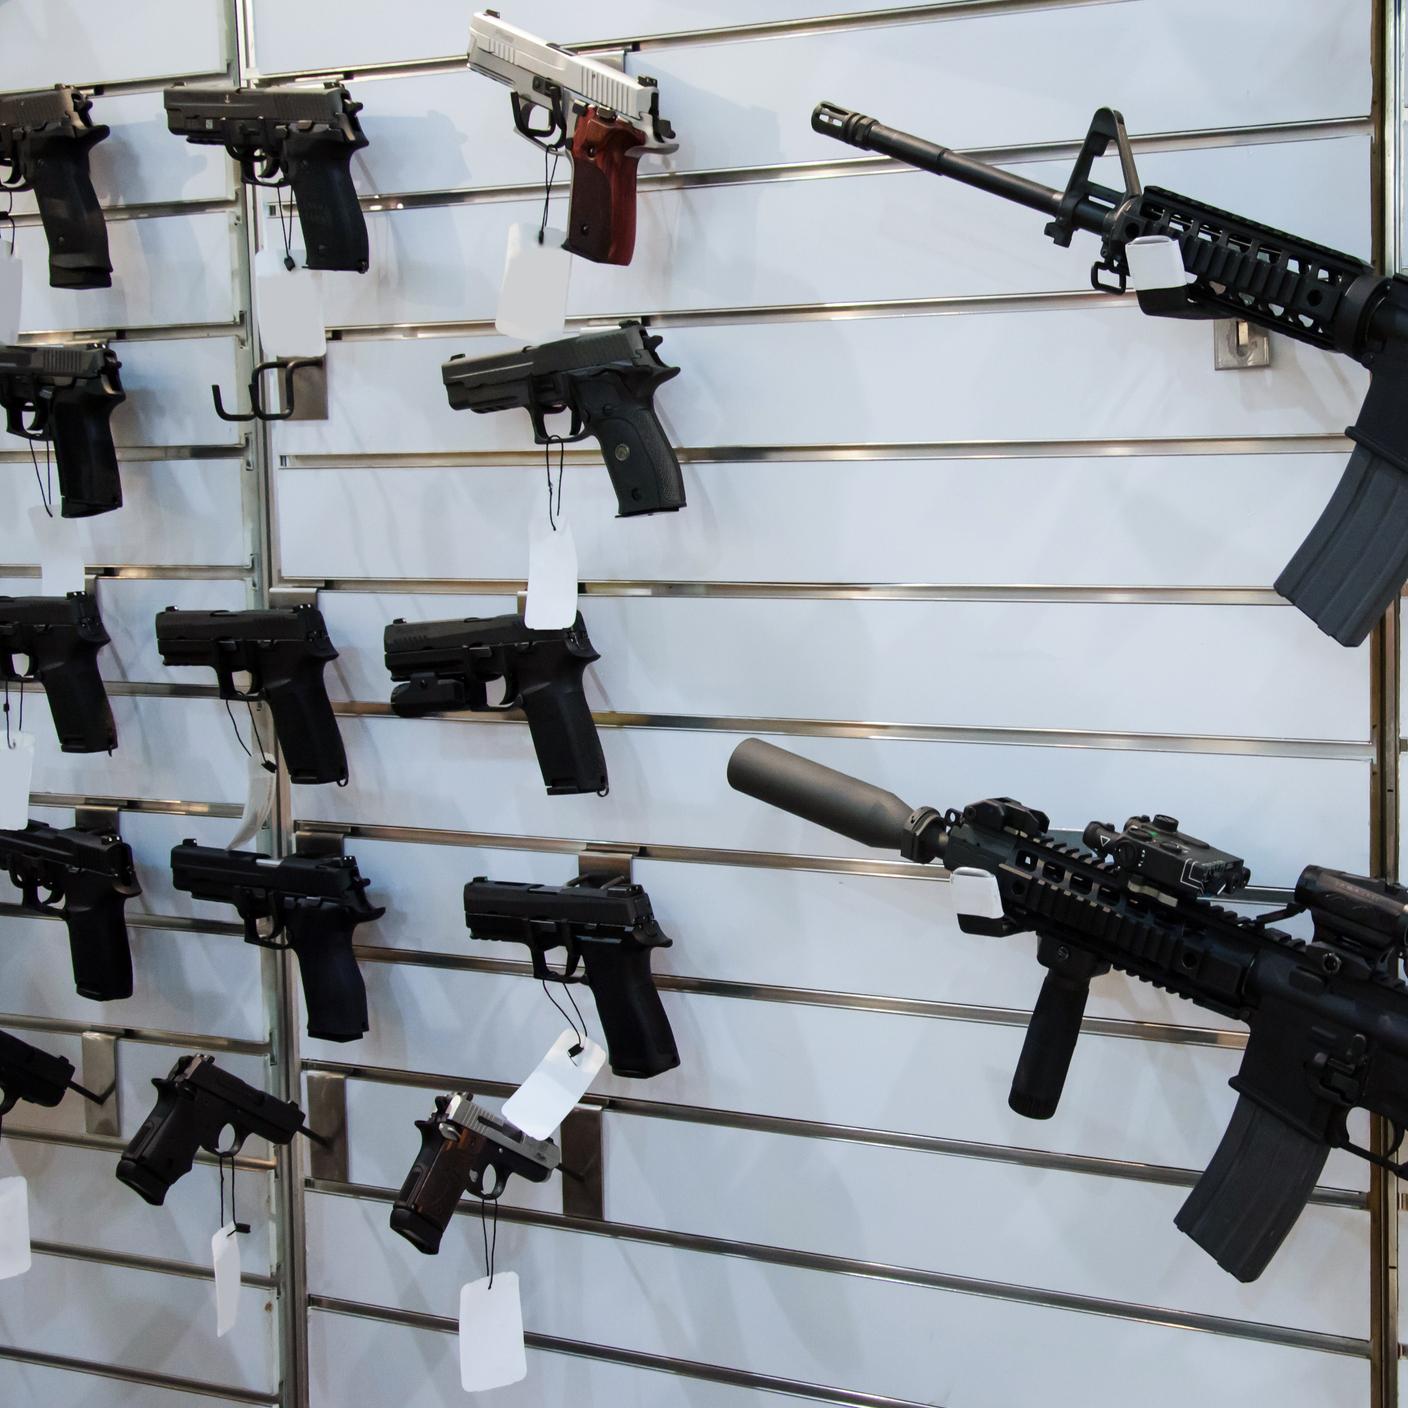 Guns hanging on store display